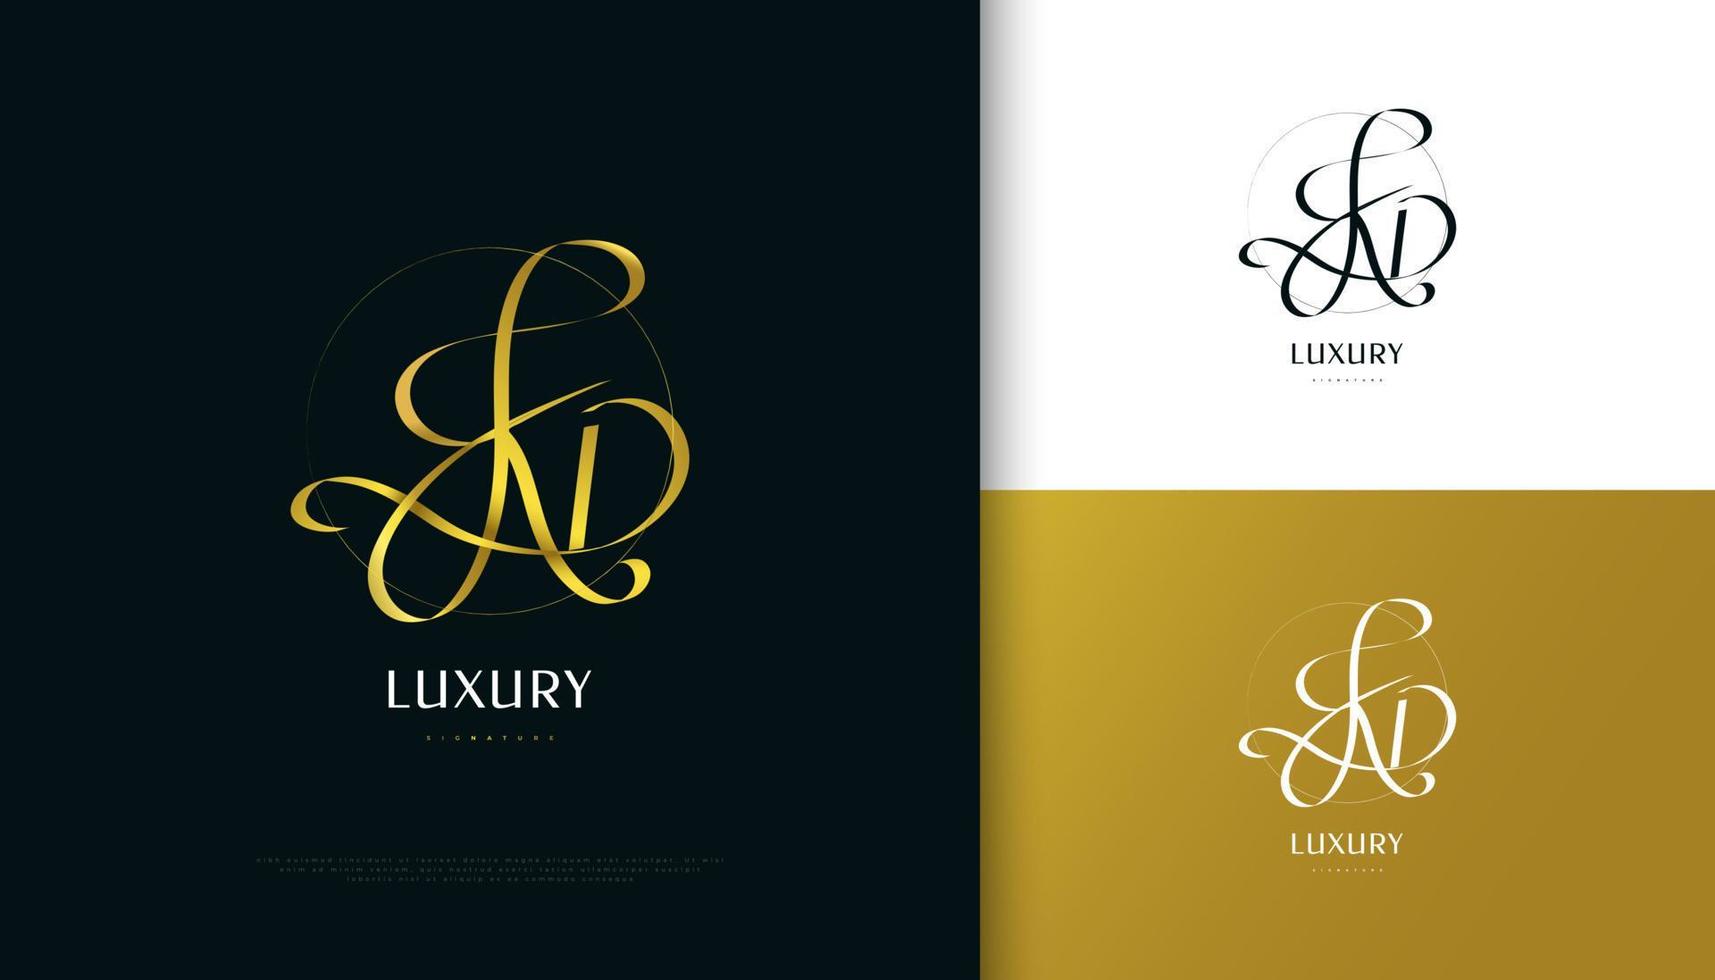 kd création initiale du logo de signature avec un style d'écriture doré élégant et minimaliste. conception initiale du logo k et d pour le mariage, la mode, les bijoux, la boutique et l'identité de la marque d'entreprise vecteur